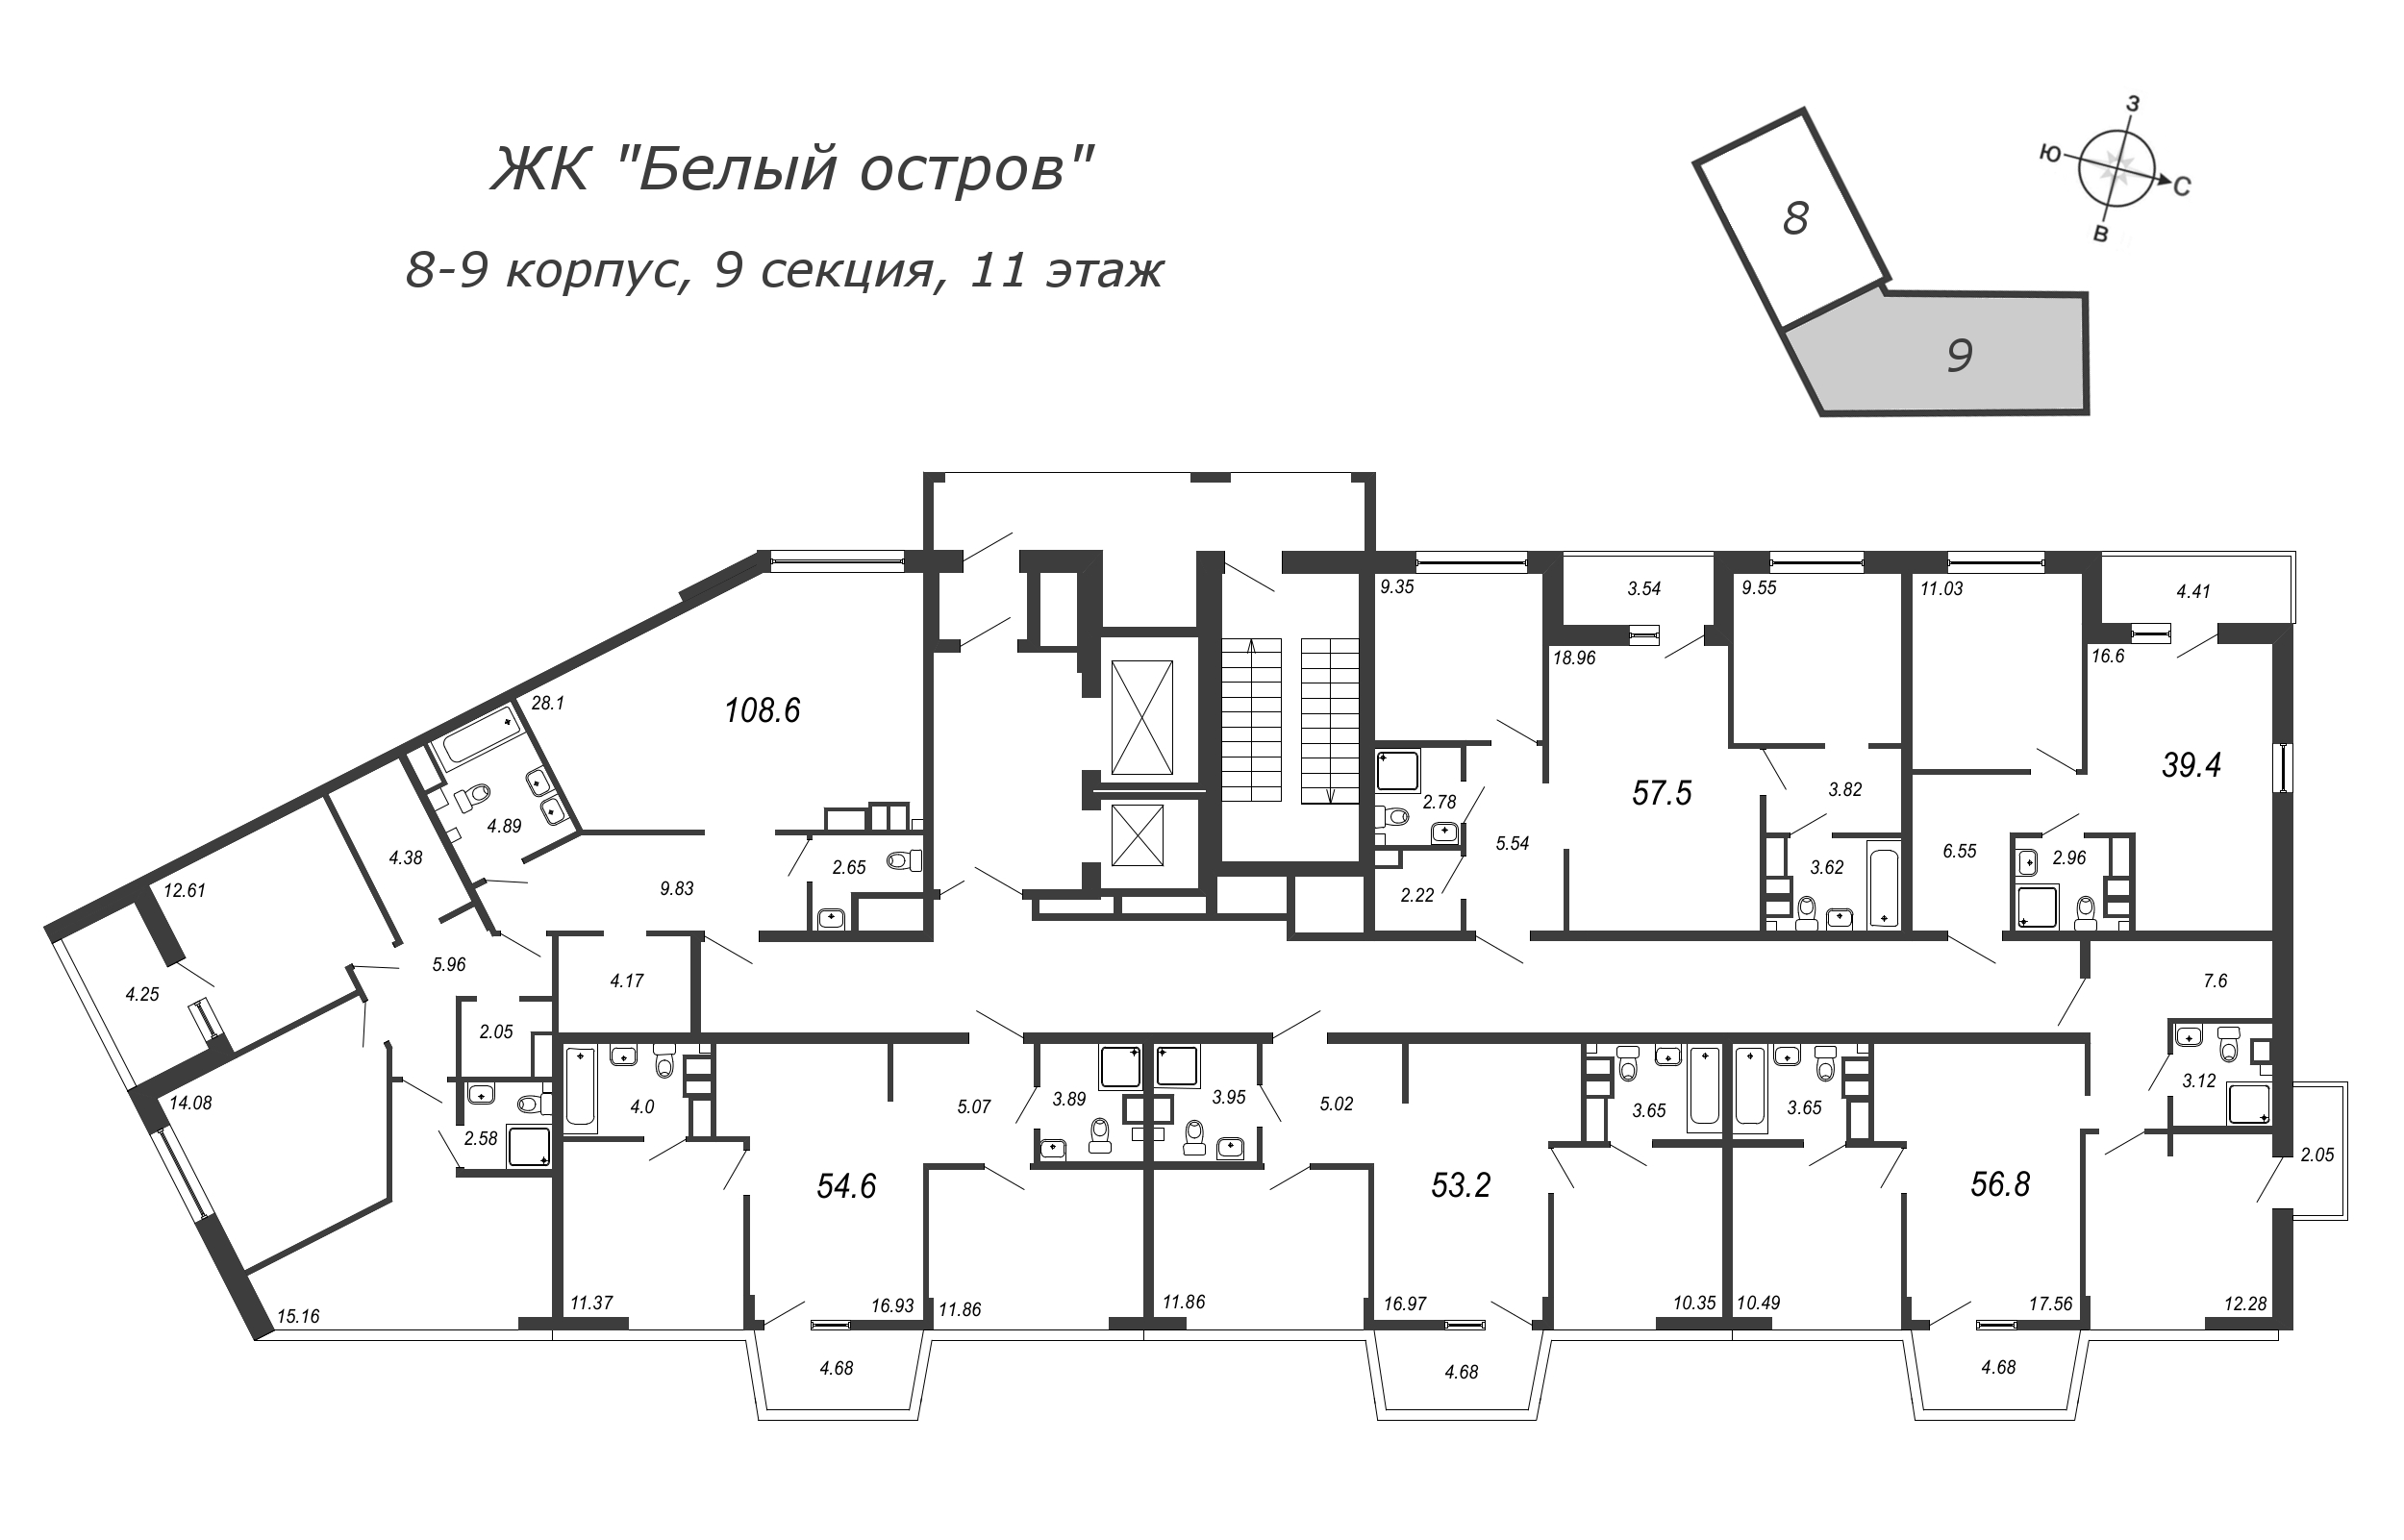 2-комнатная (Евро) квартира, 39.6 м² в ЖК "Белый остров" - планировка этажа